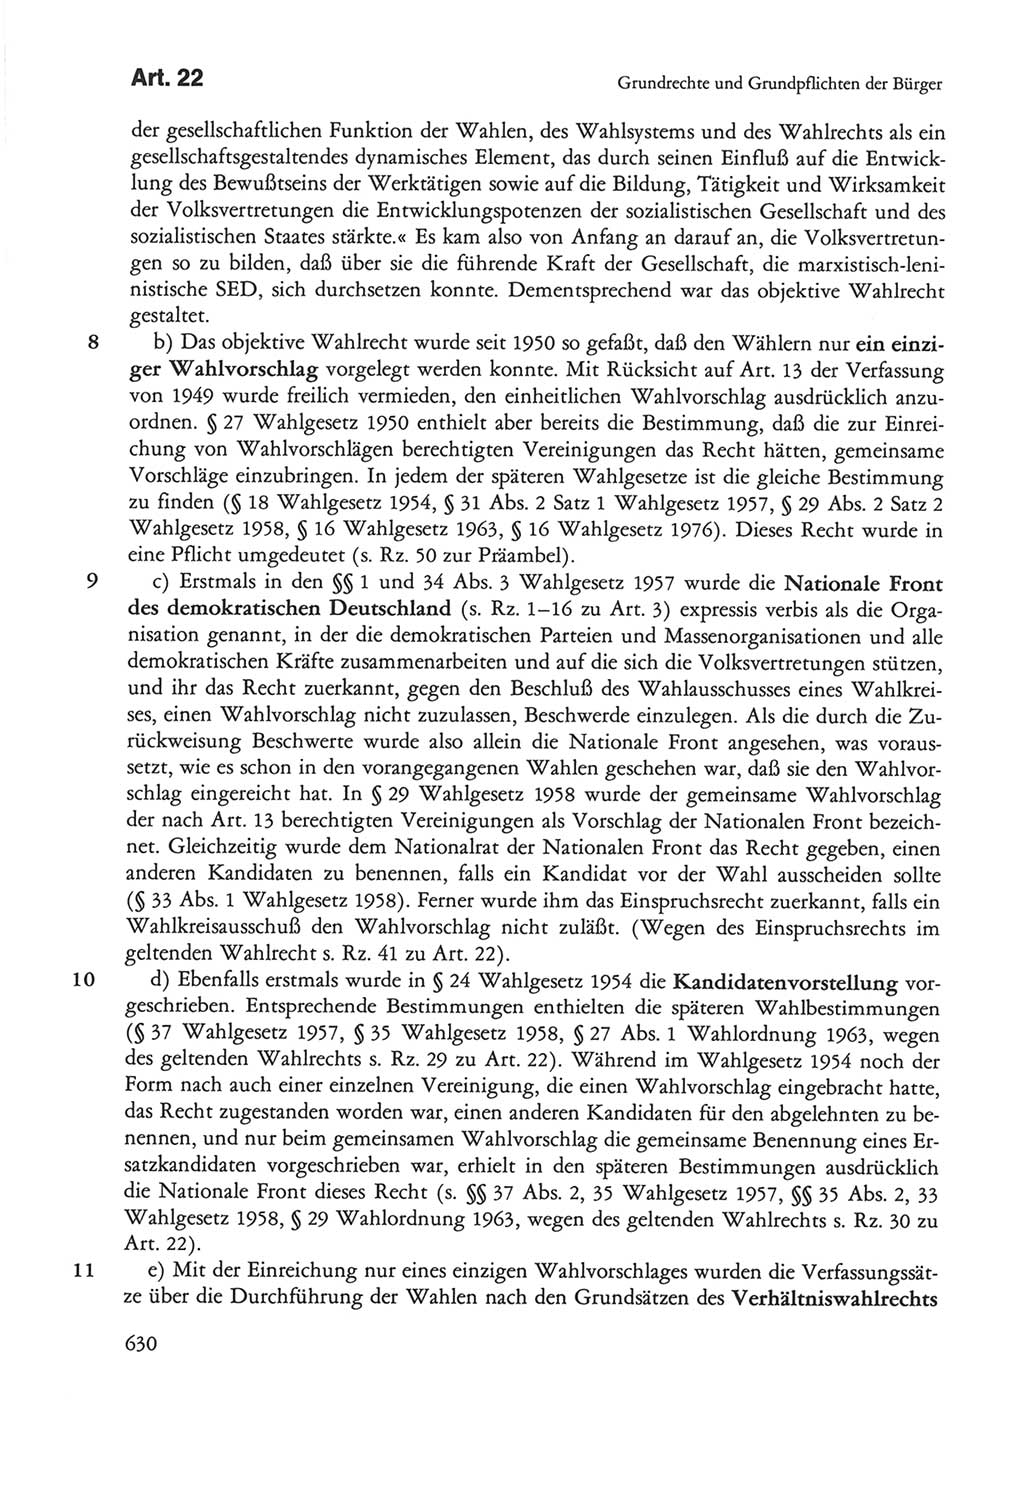 Die sozialistische Verfassung der Deutschen Demokratischen Republik (DDR), Kommentar mit einem Nachtrag 1997, Seite 630 (Soz. Verf. DDR Komm. Nachtr. 1997, S. 630)